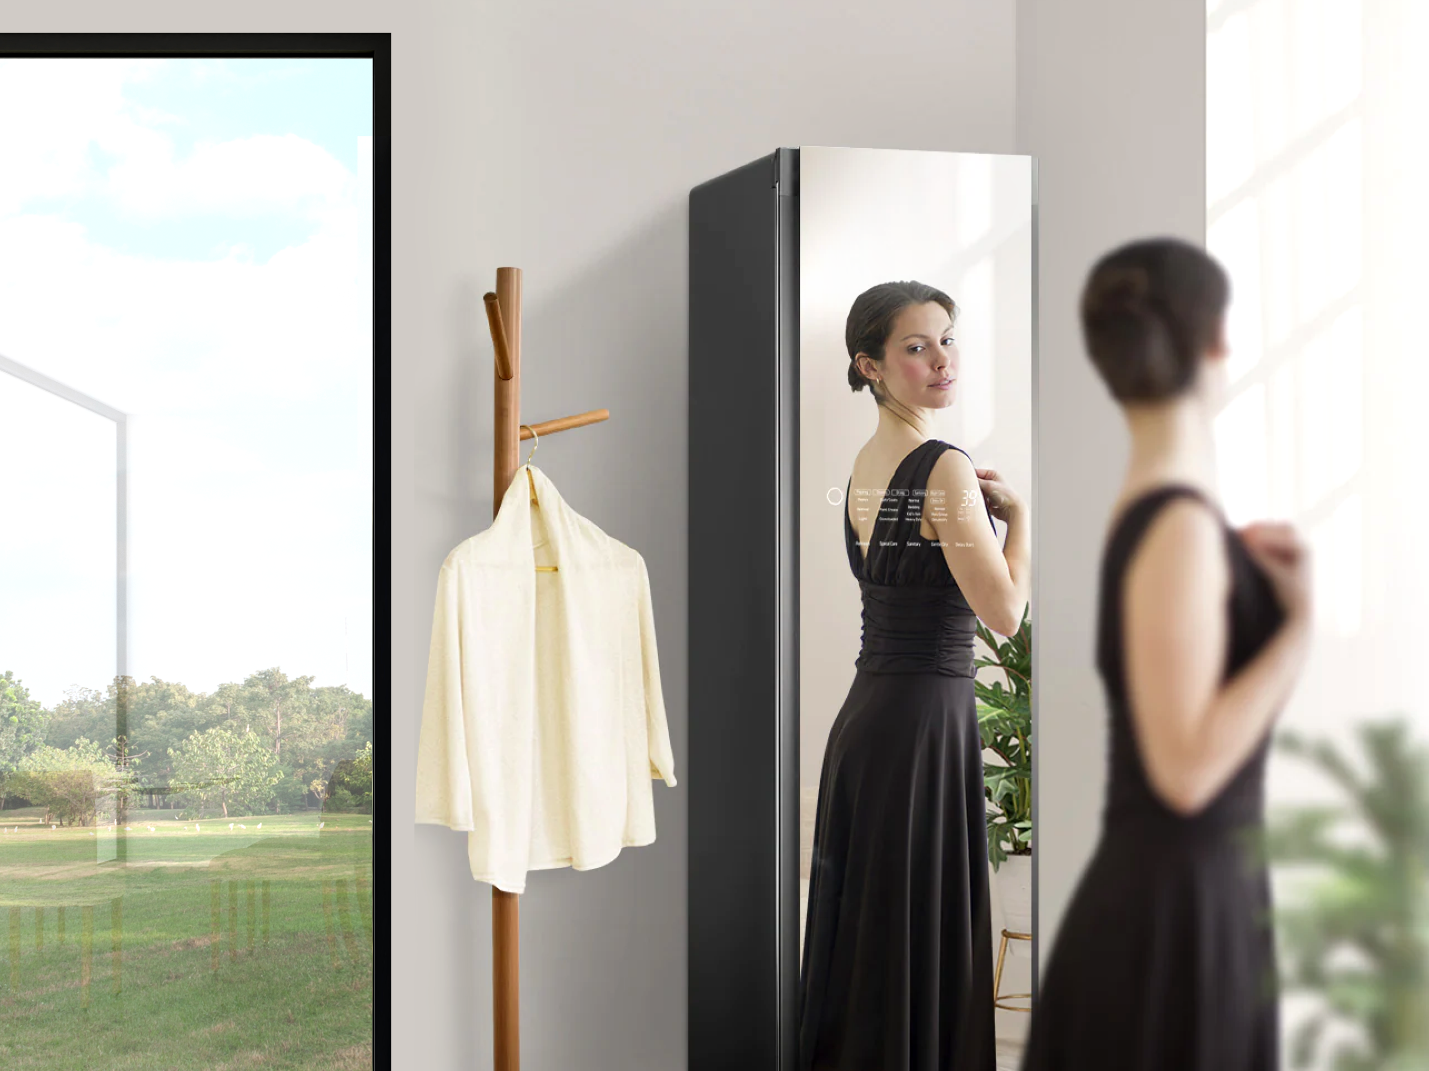 Tủ quần áo thông minh với mặt gương kính thời thượng: Siêu phẩm LG Styler các chị em đều muốn sở hữu - Ảnh 3.